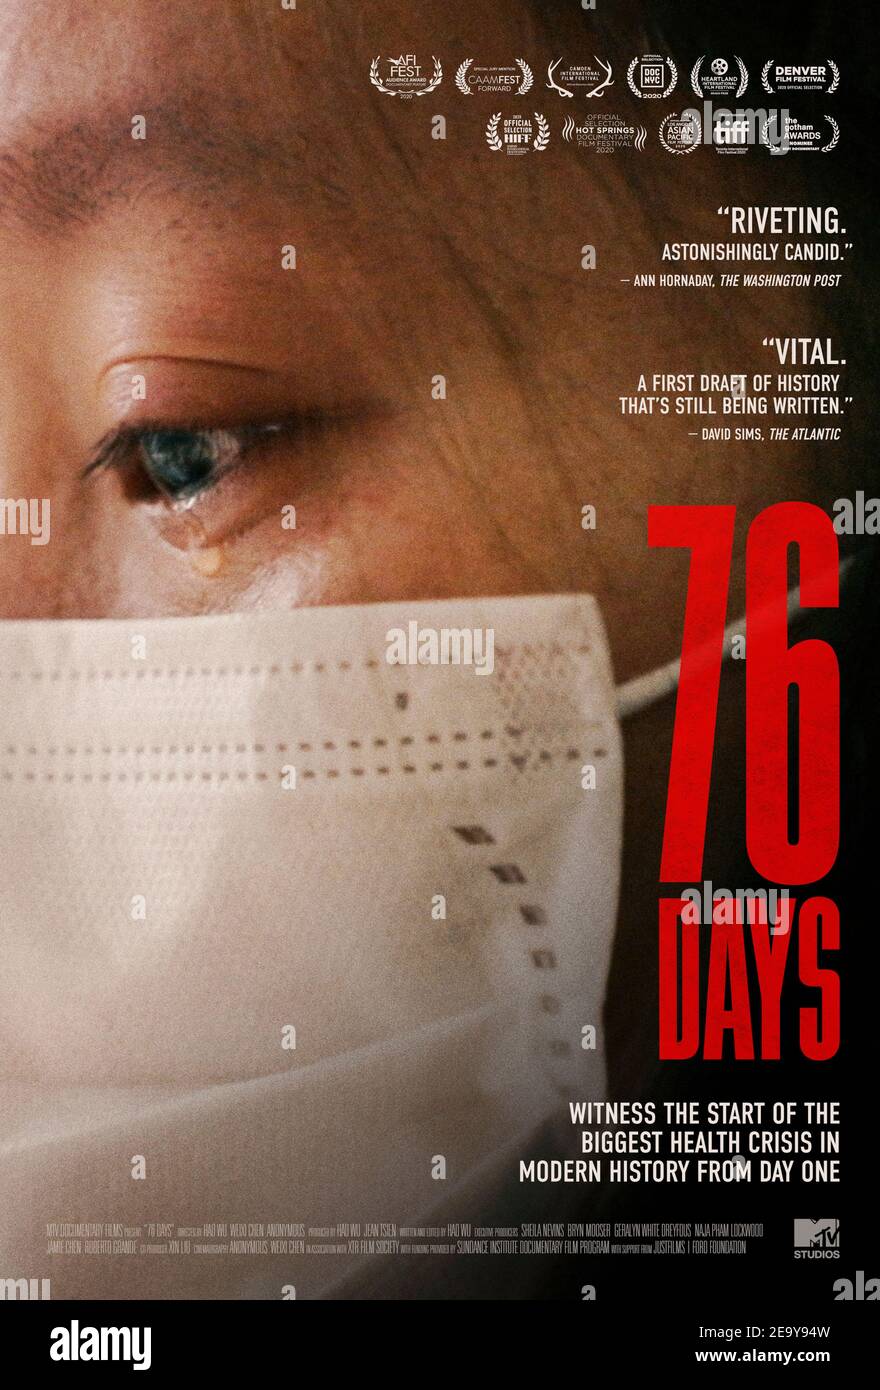 76 jours (2020) réalisé par Weixi Chen et Hao Wu et mettant en vedette . Documentaire sur les patients et les professionnels de la santé de première ligne qui ont lutté contre la pandémie COVID-19 au cours de ses premiers jours à Wuhan, en Chine. Banque D'Images